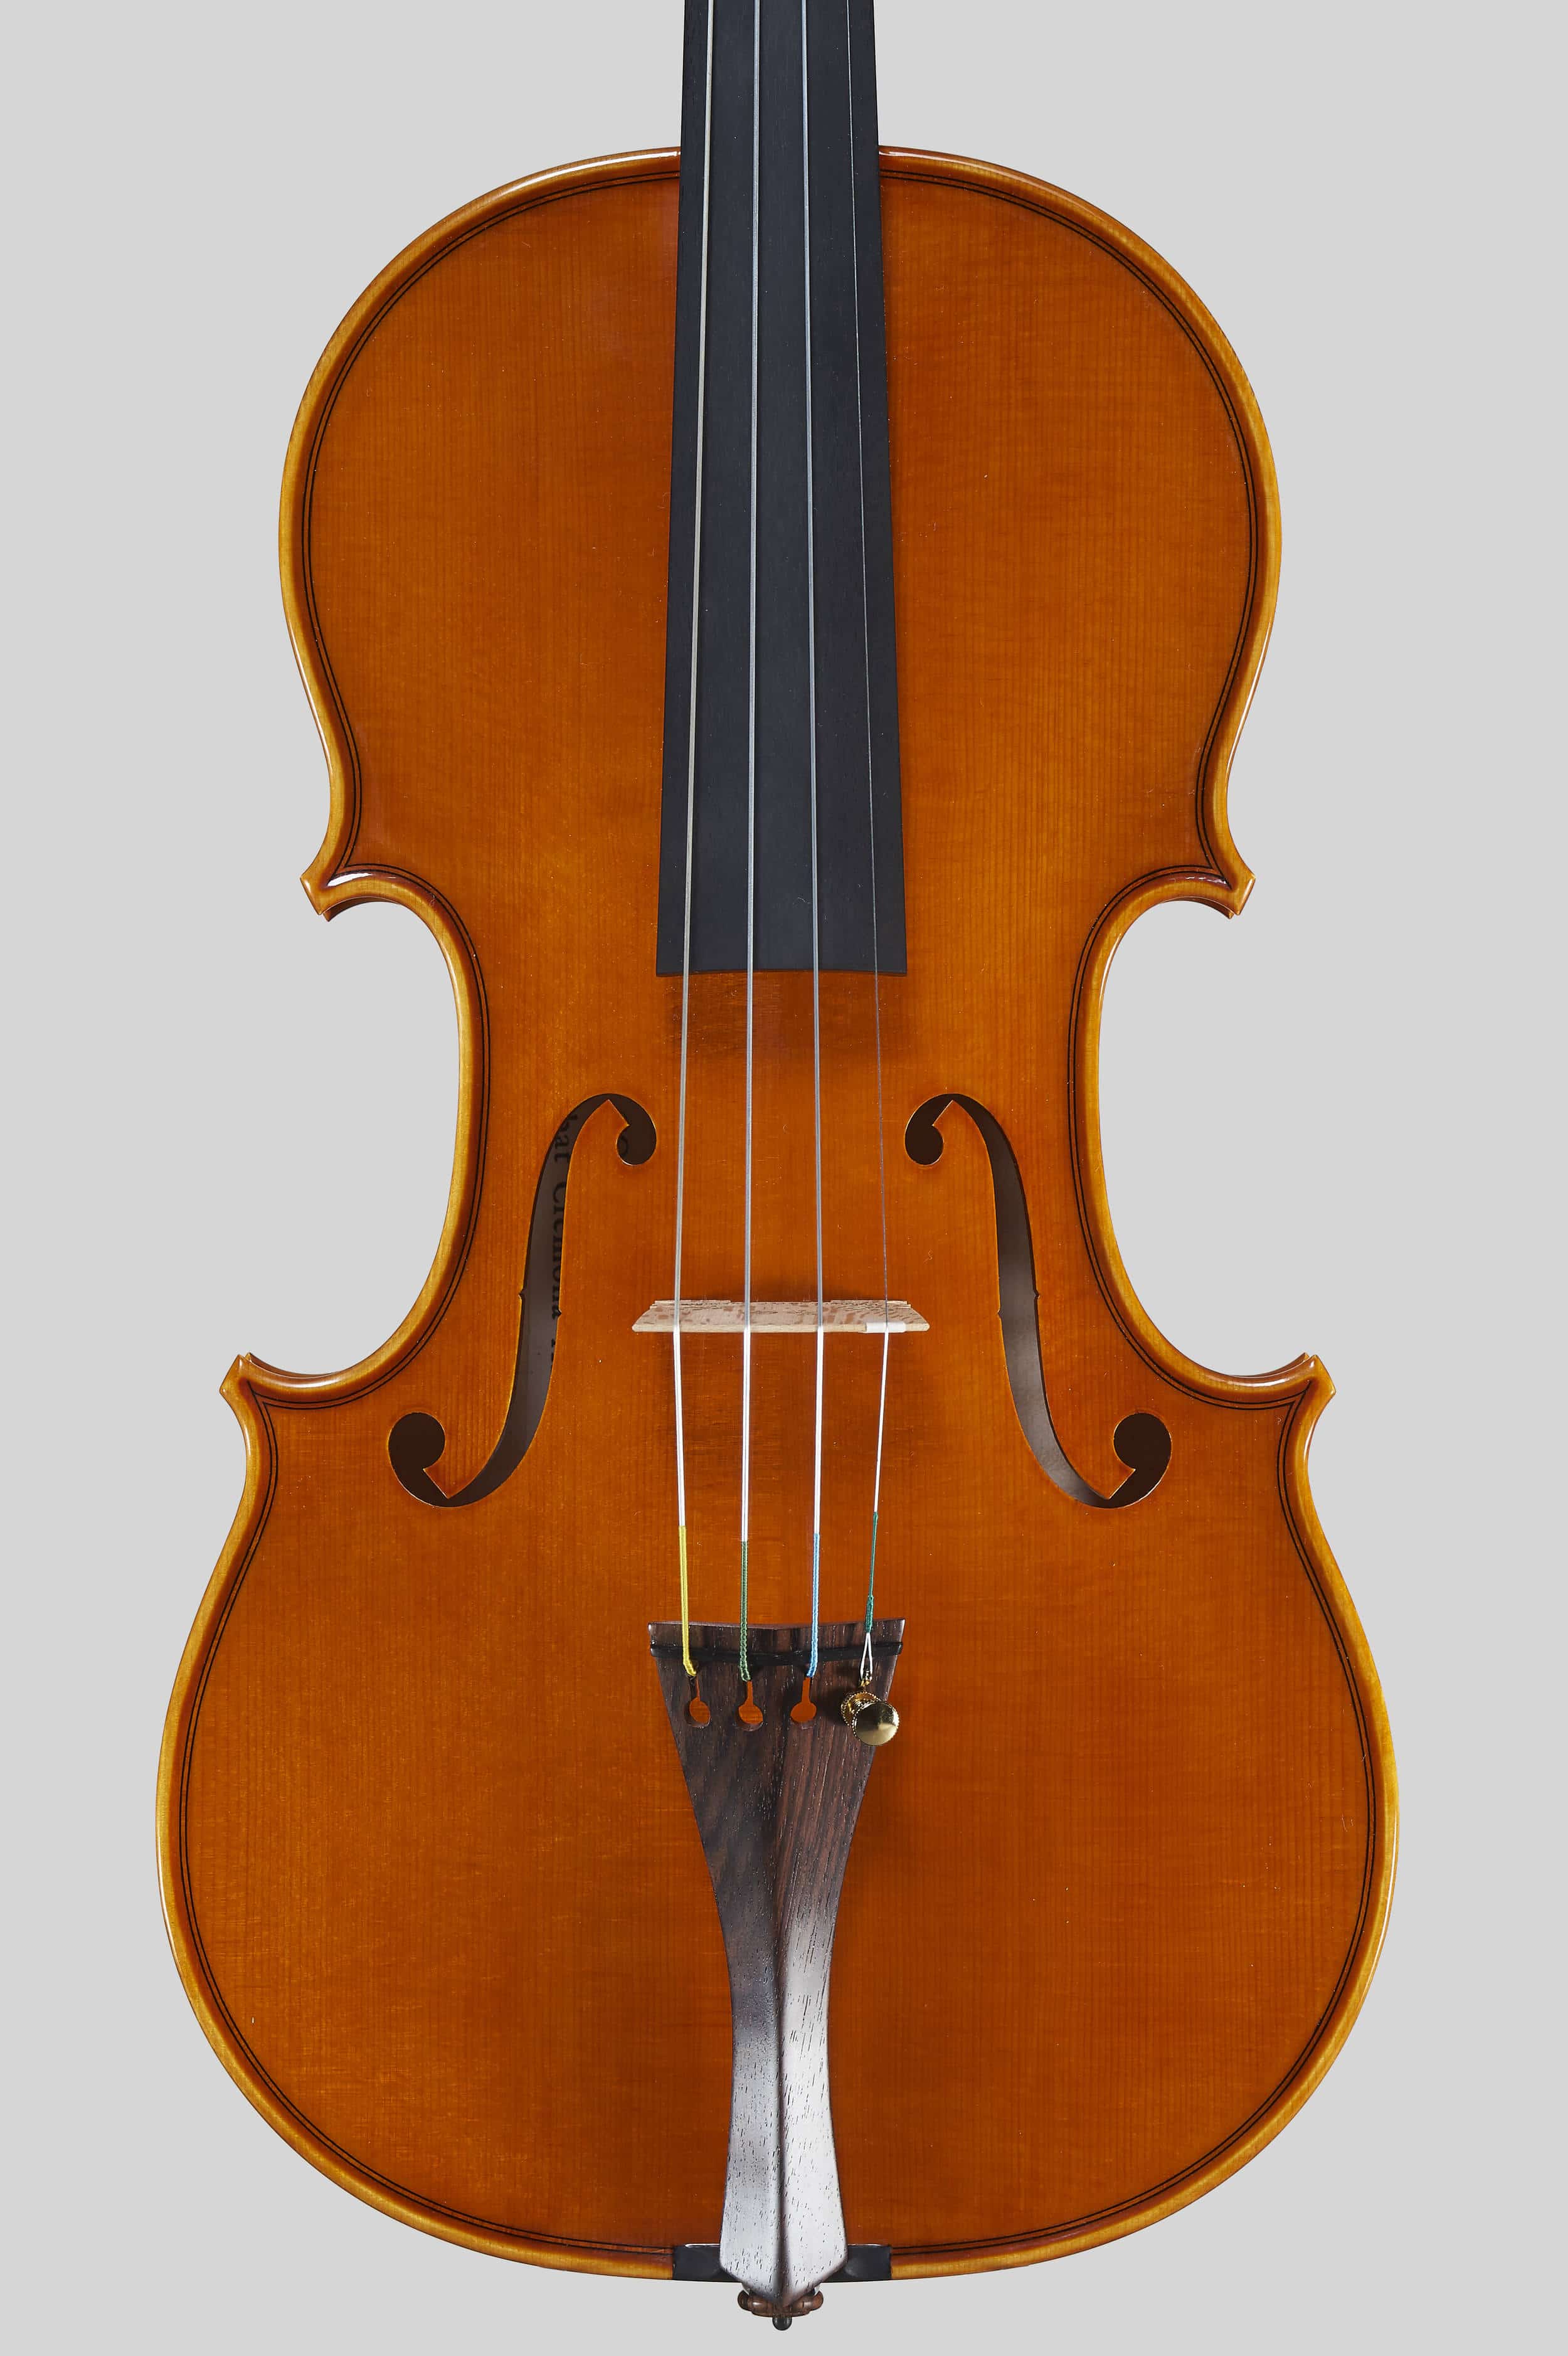 Anno 2016 - Violino modello A. Stradivari Rode, Le nestor 1733 - Tavola